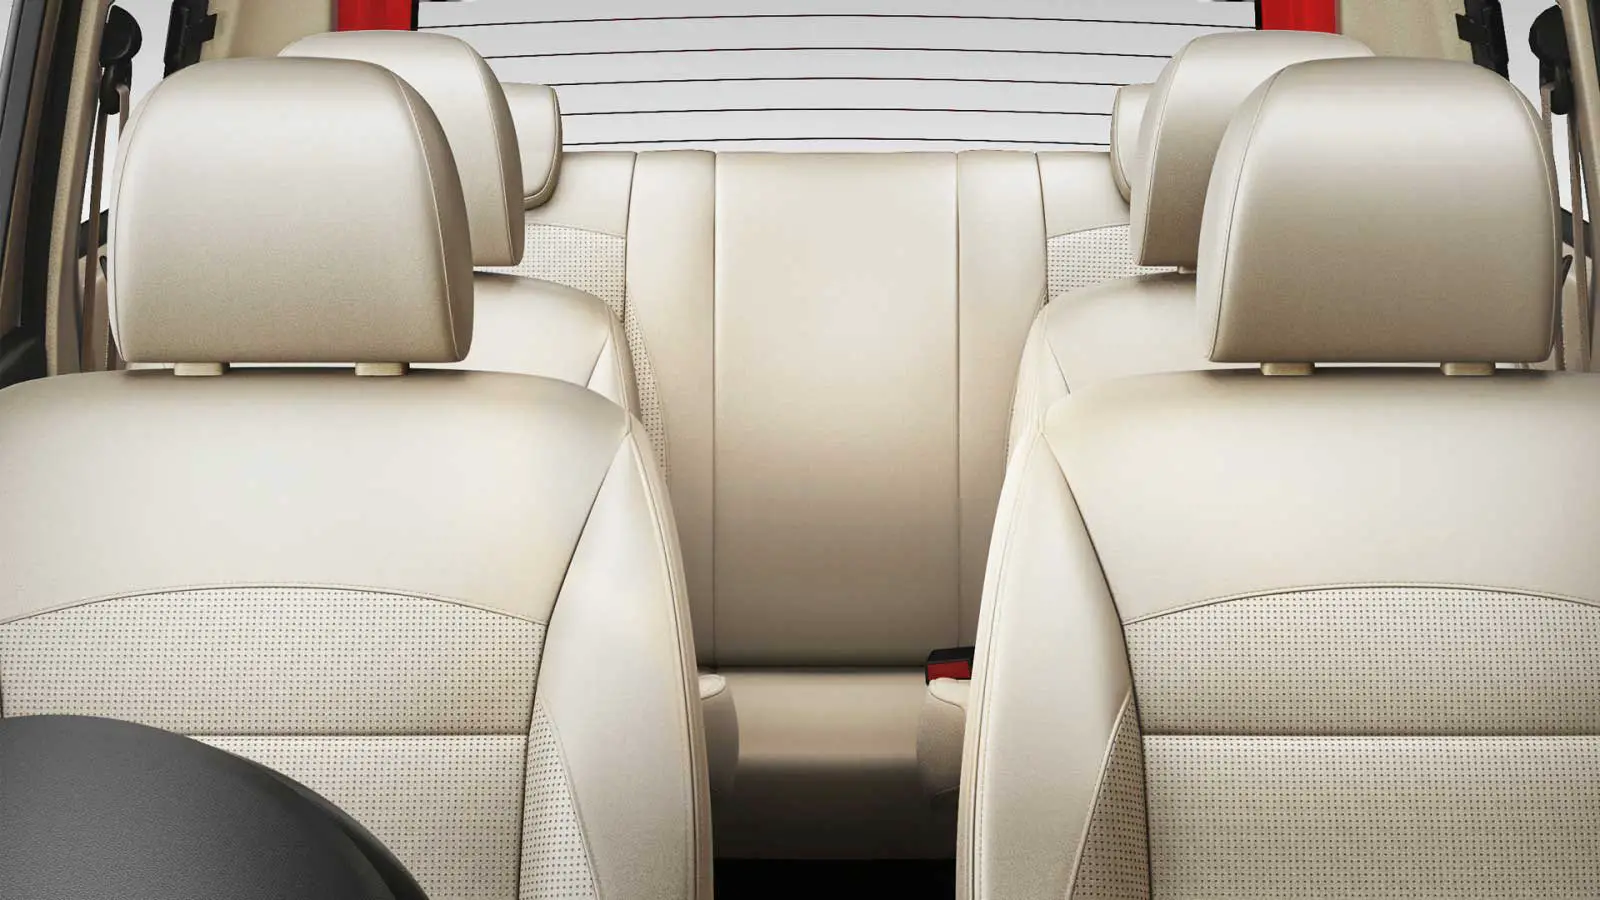 Chevrolet Enjoy 1.4 LT 8 STR Interior seats